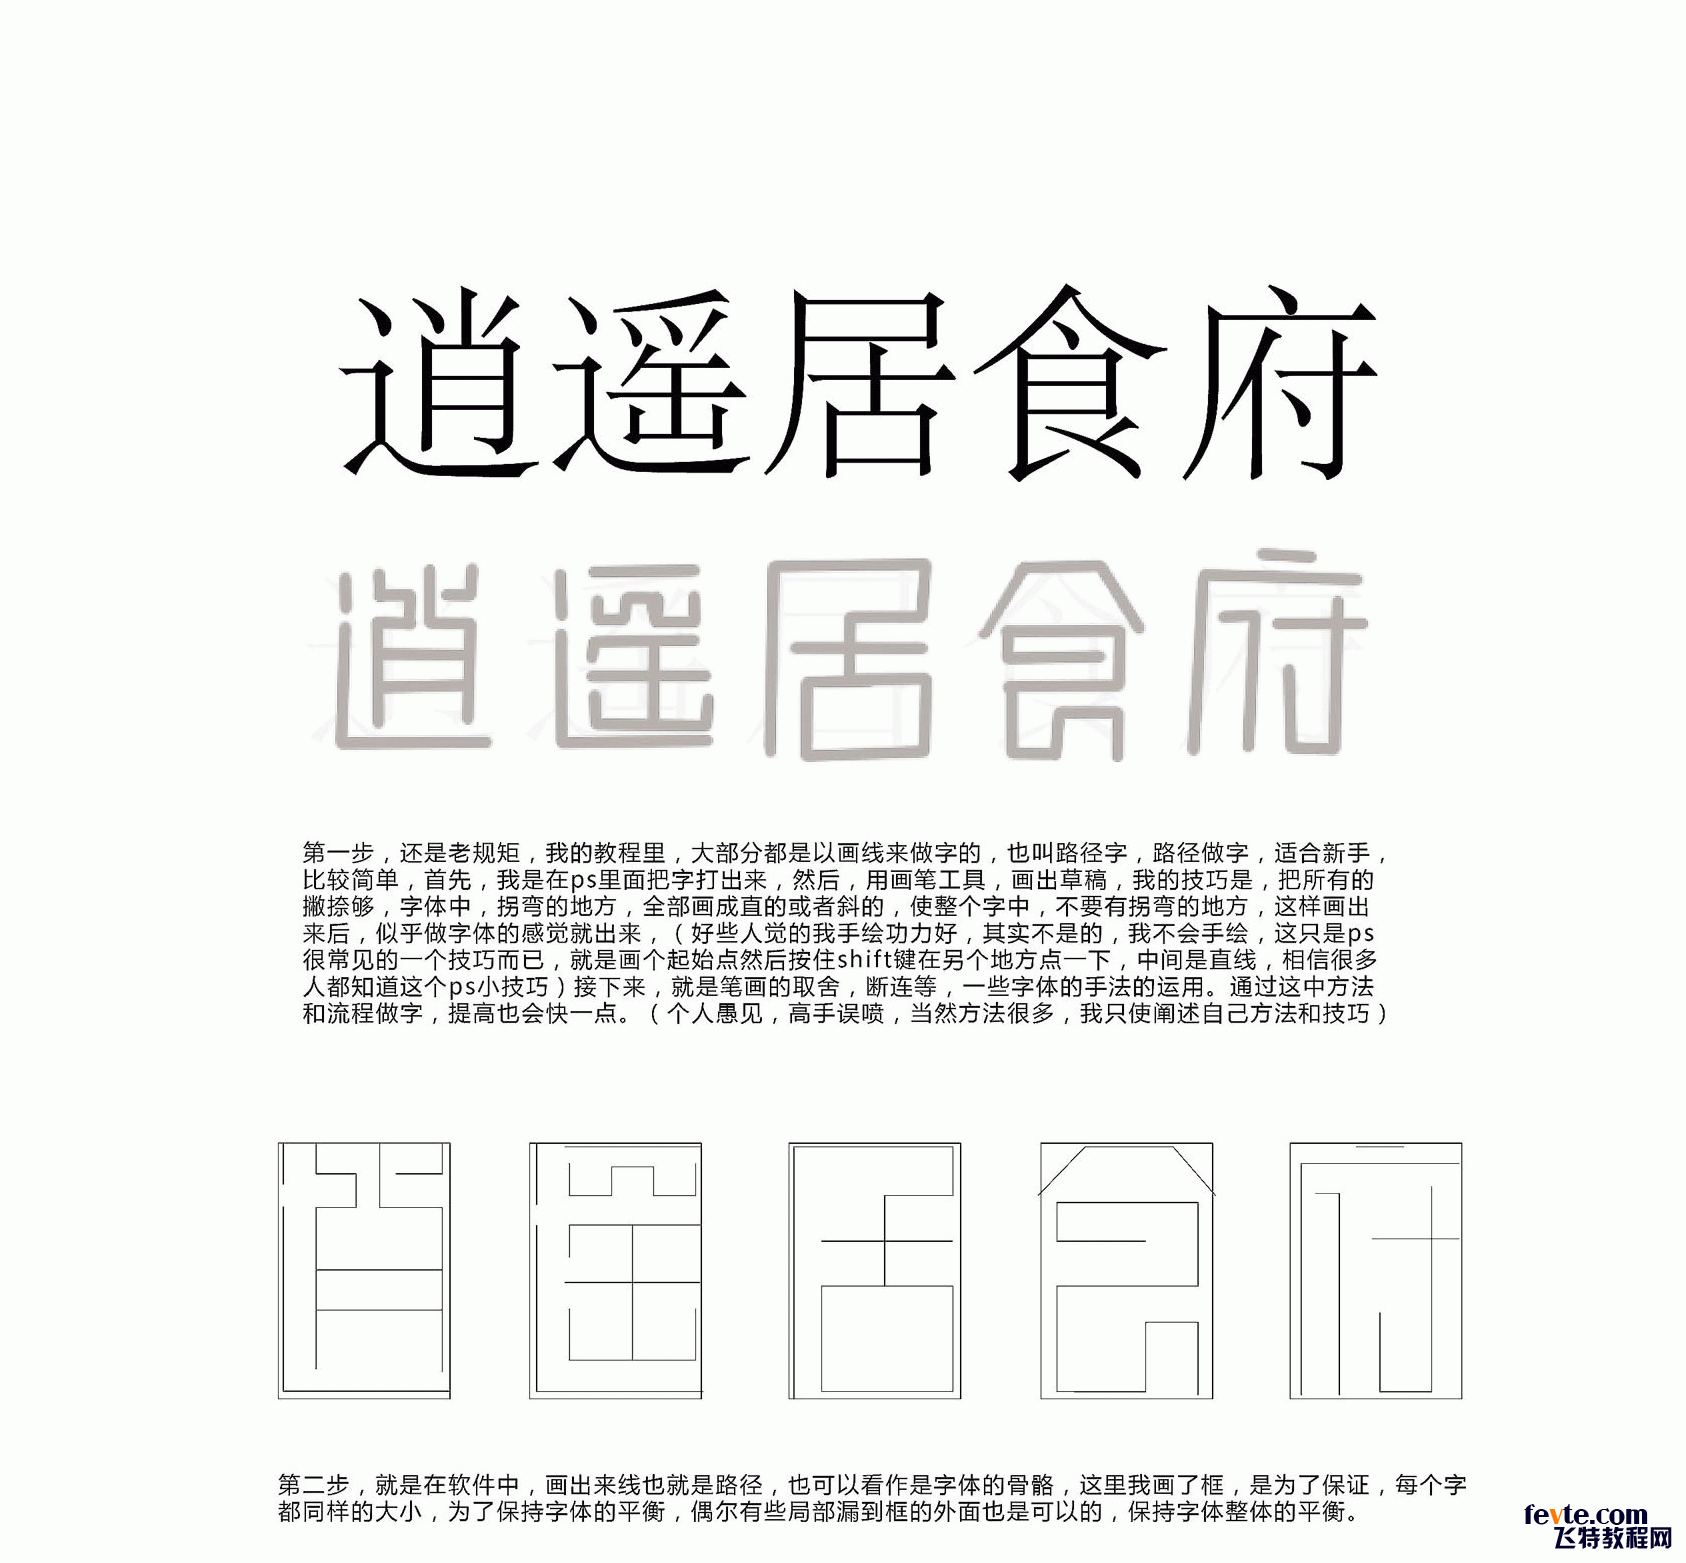 AI制作漂亮的中国风标志2